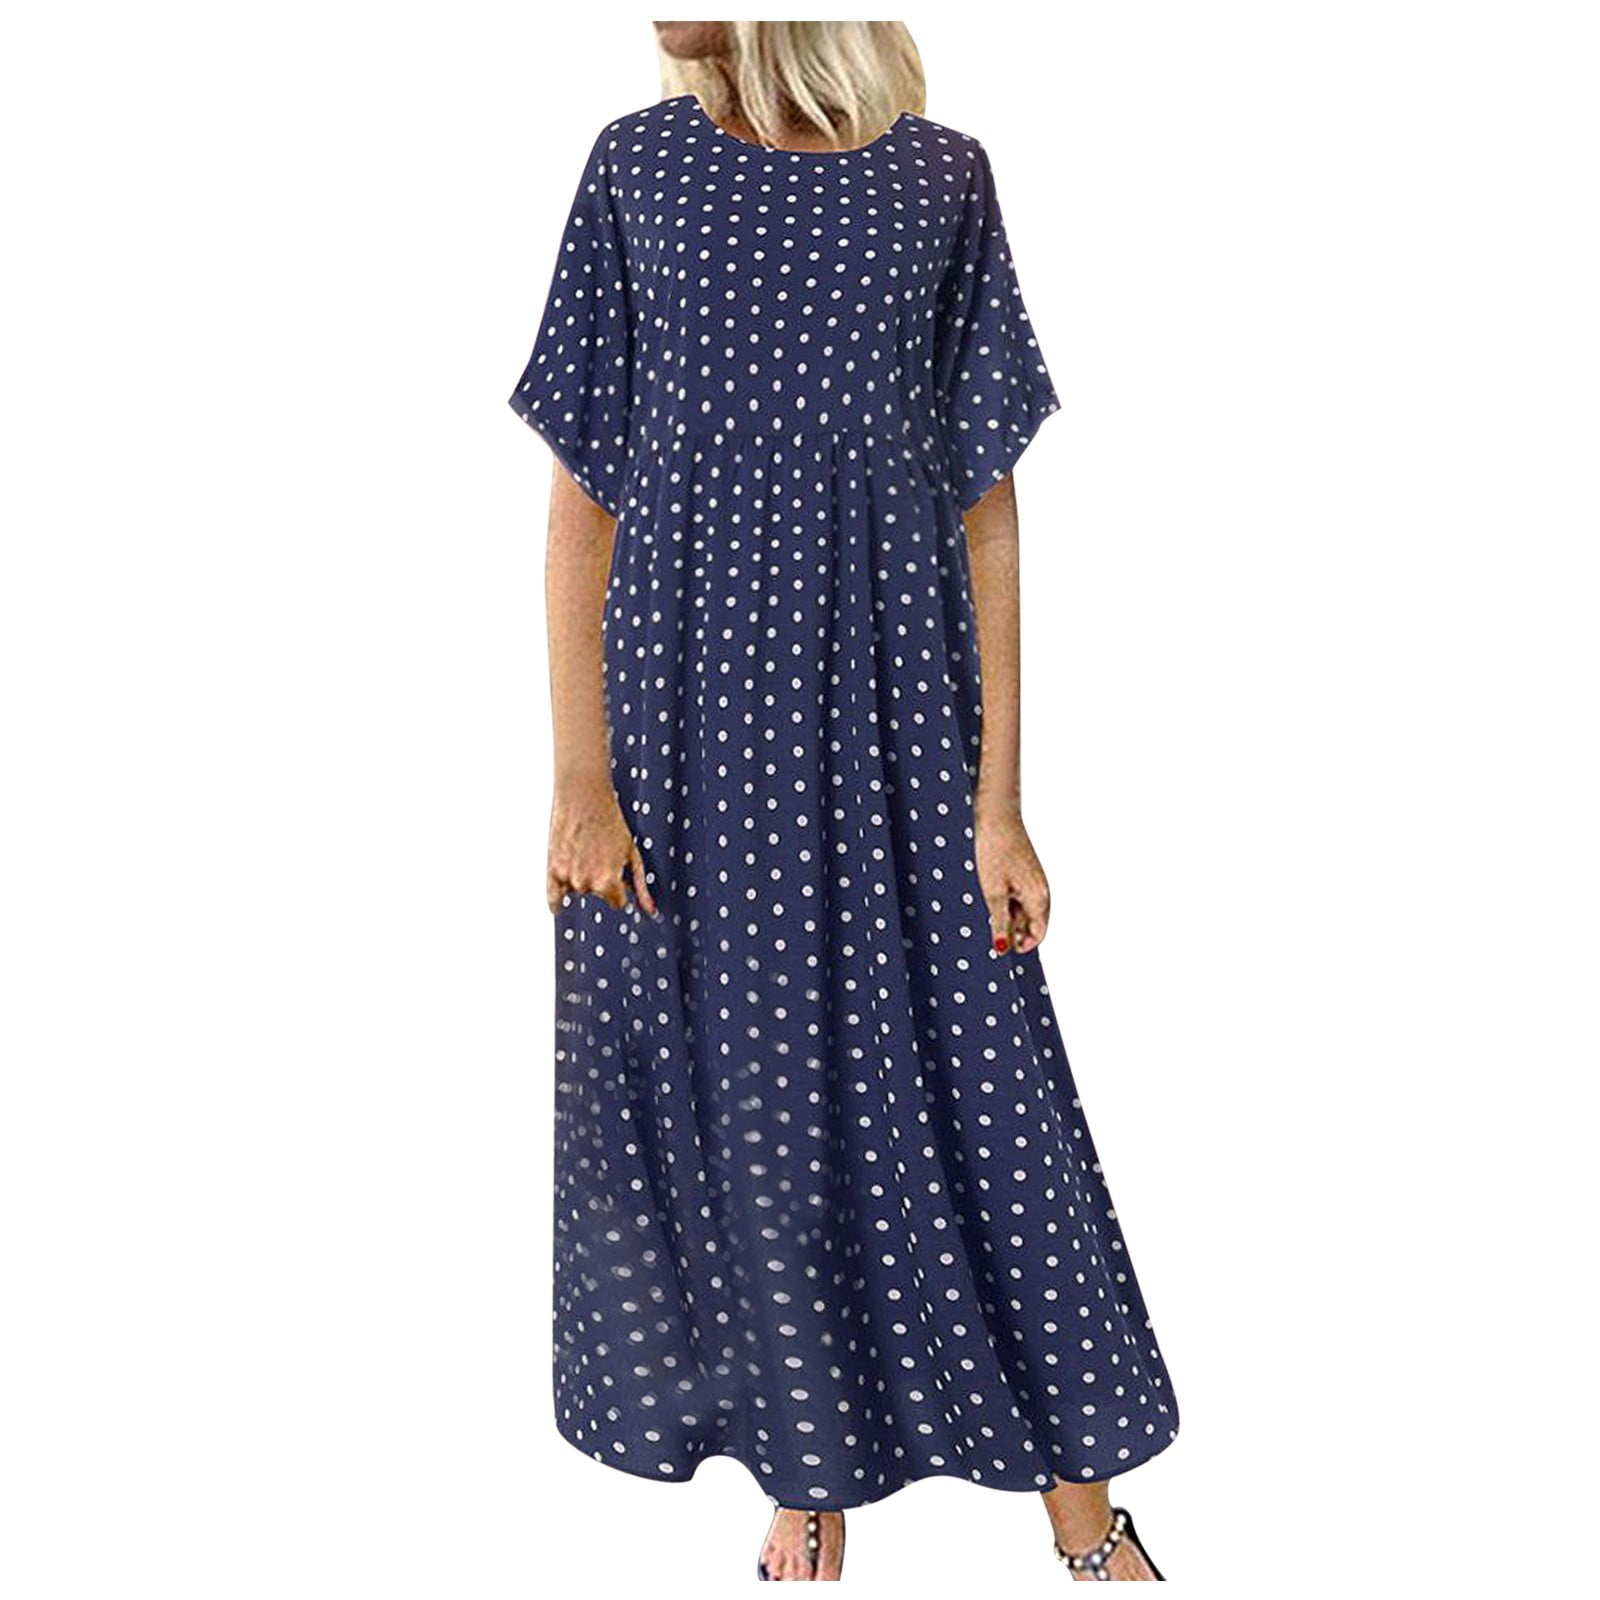 NECHOLOGY Summer Dress For Women Polka Beach Dot Short Dress Causal ...